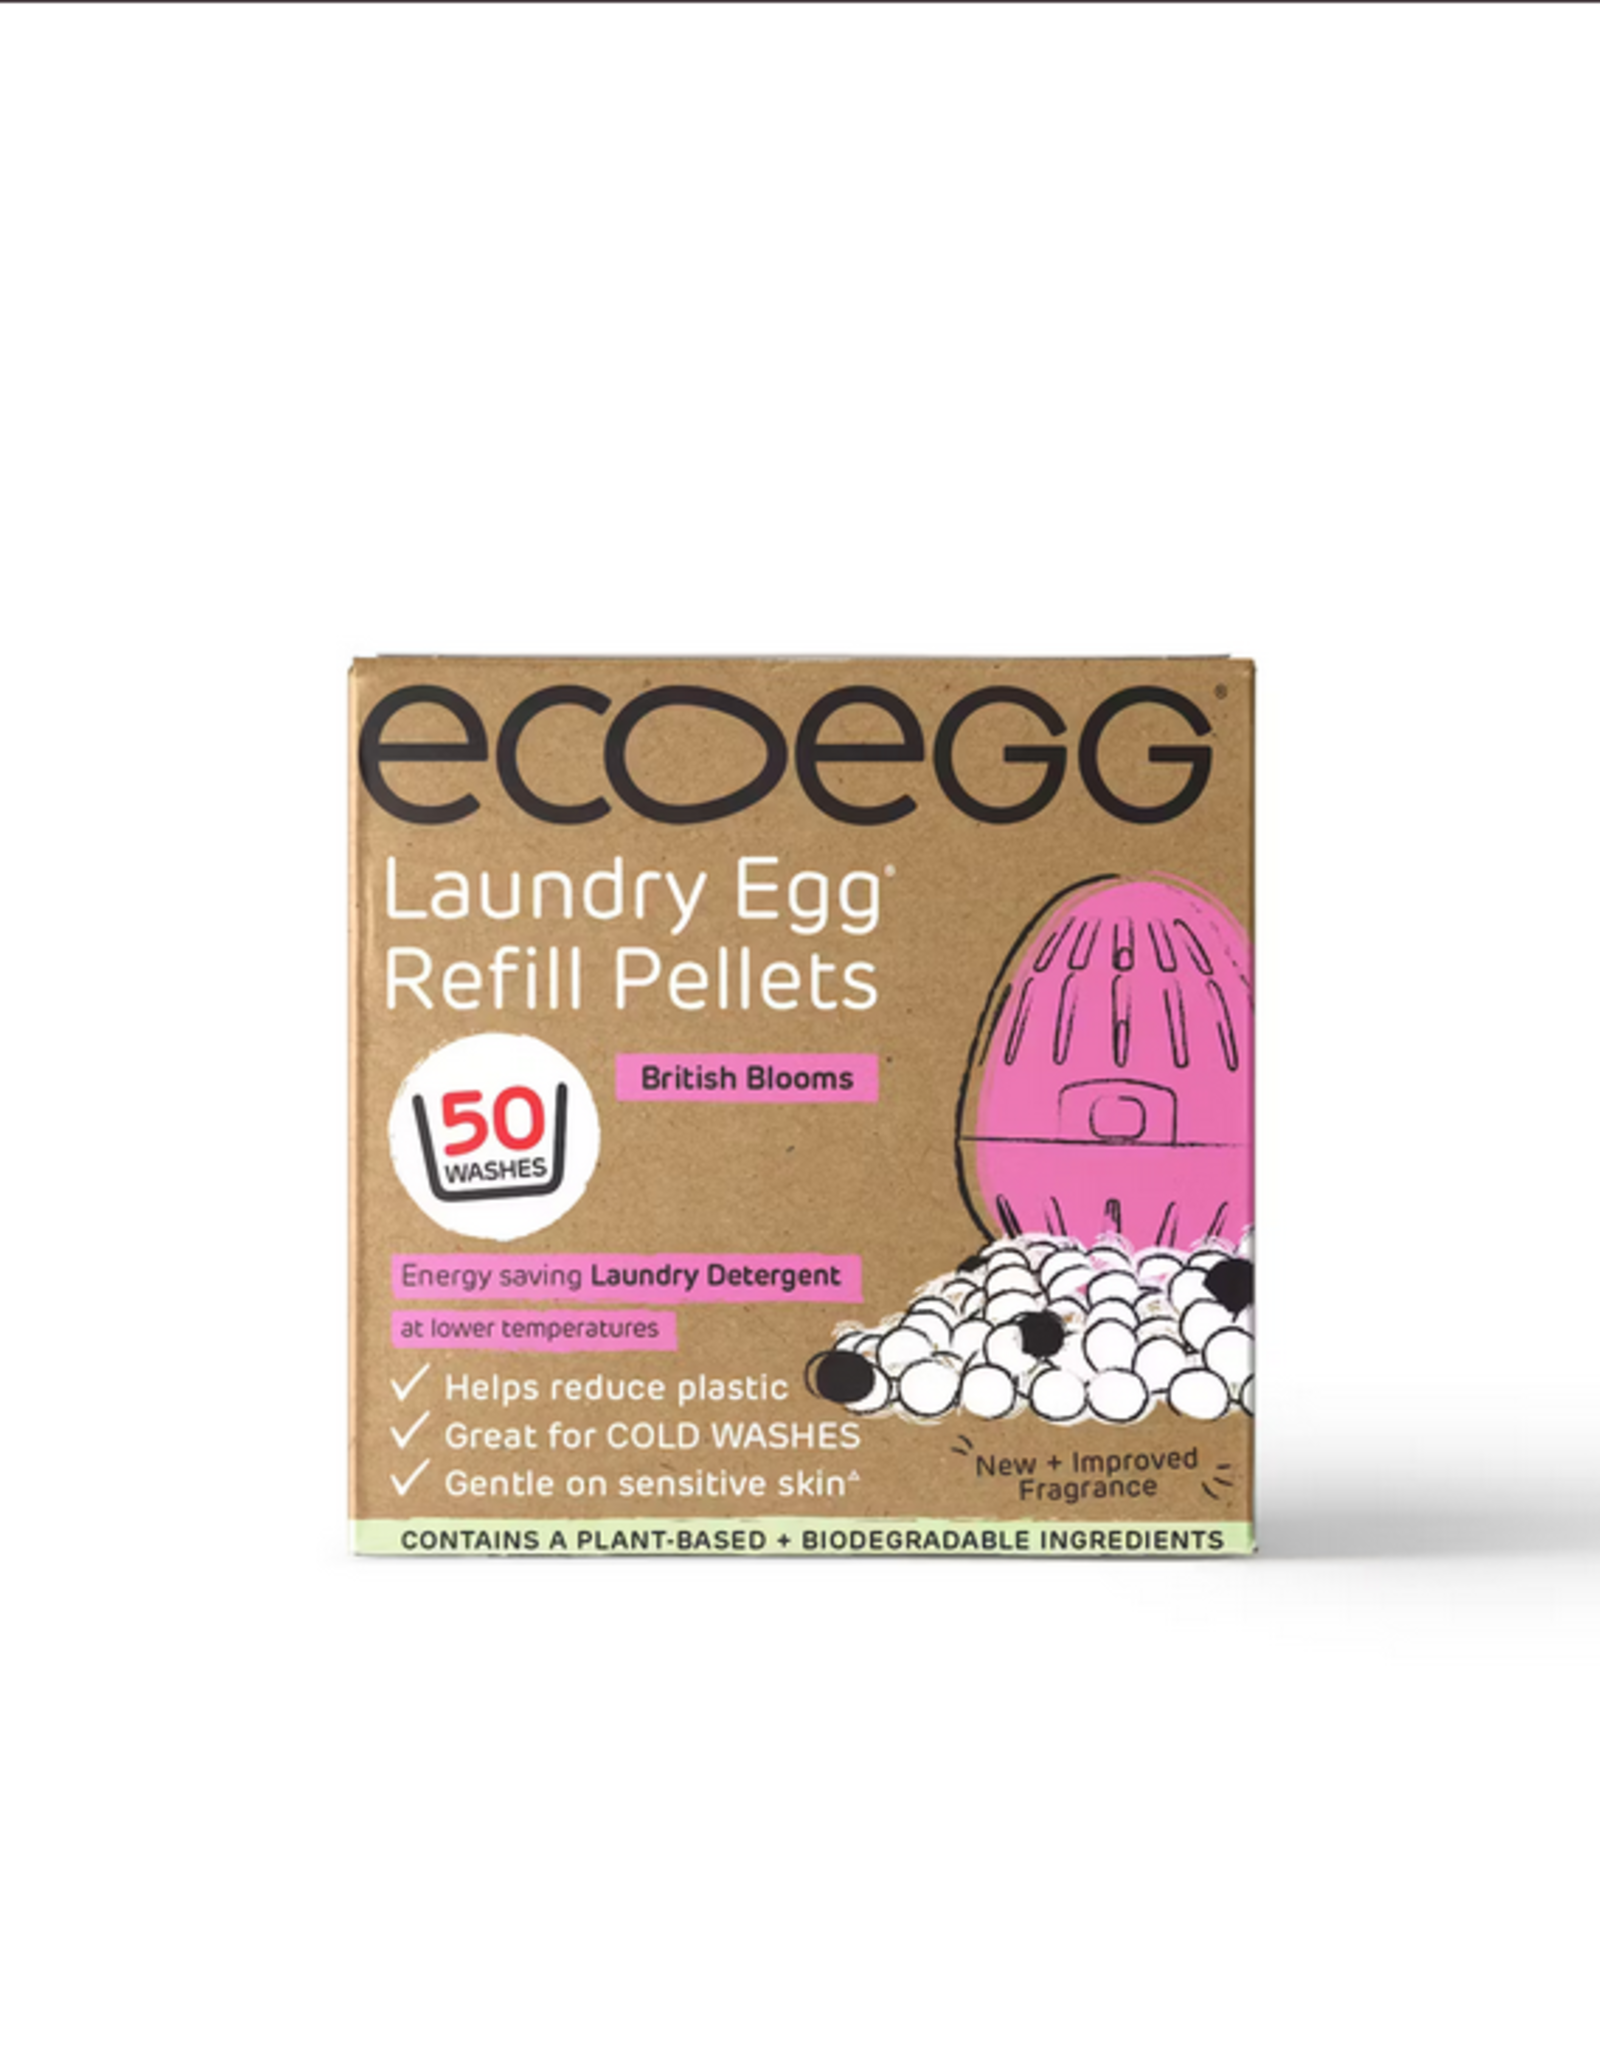 Ecoegg Ecoegg Laundry Egg  British Blooms - 50 washes - refill